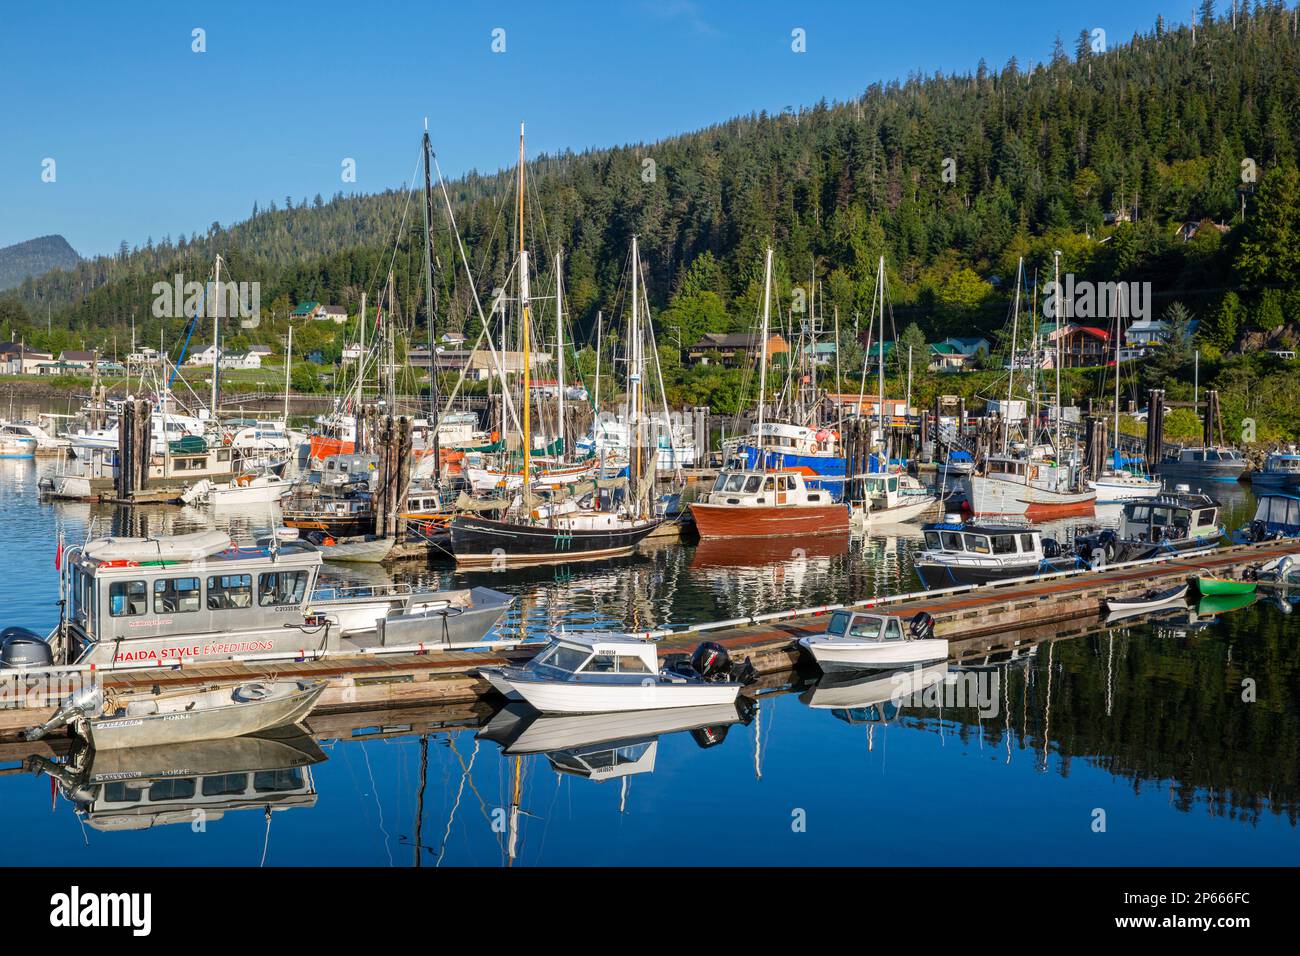 Le port dans le village de Queen Charlotte, Île Graham (Haida Gwaii), Colombie-Britannique, Canada, Amérique du Nord Banque D'Images